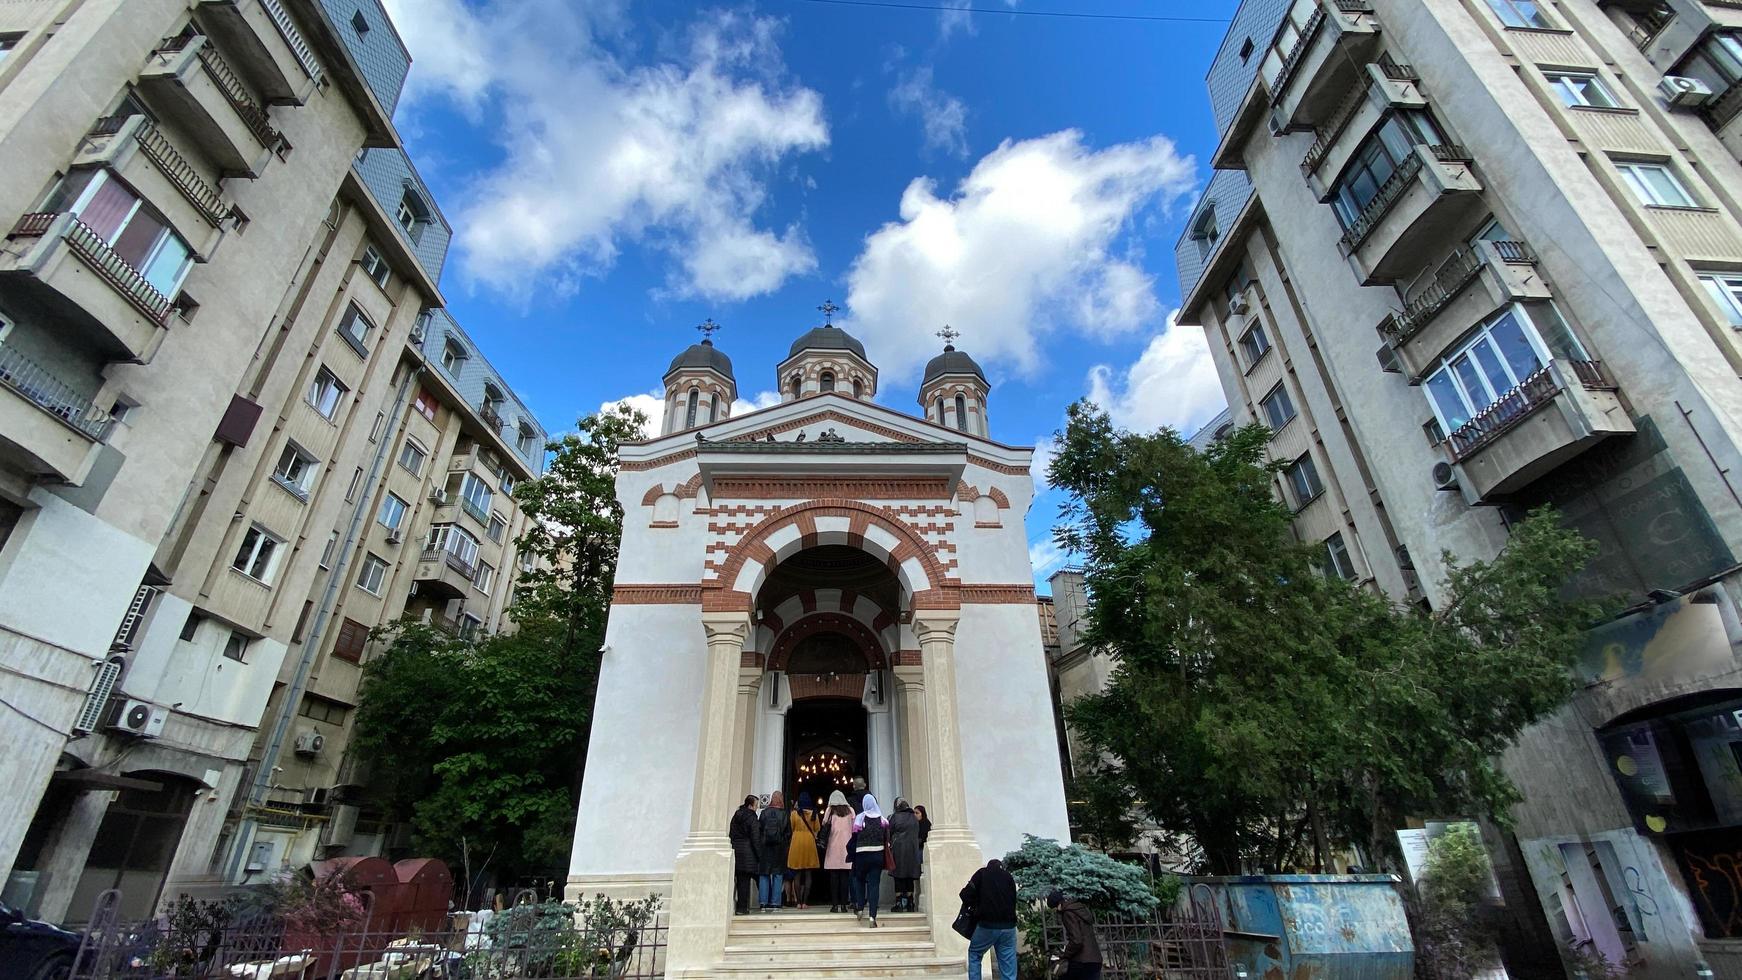 bucarest, roumanie 2021- vieille église orthodoxe chrétienne roumaine classique photo